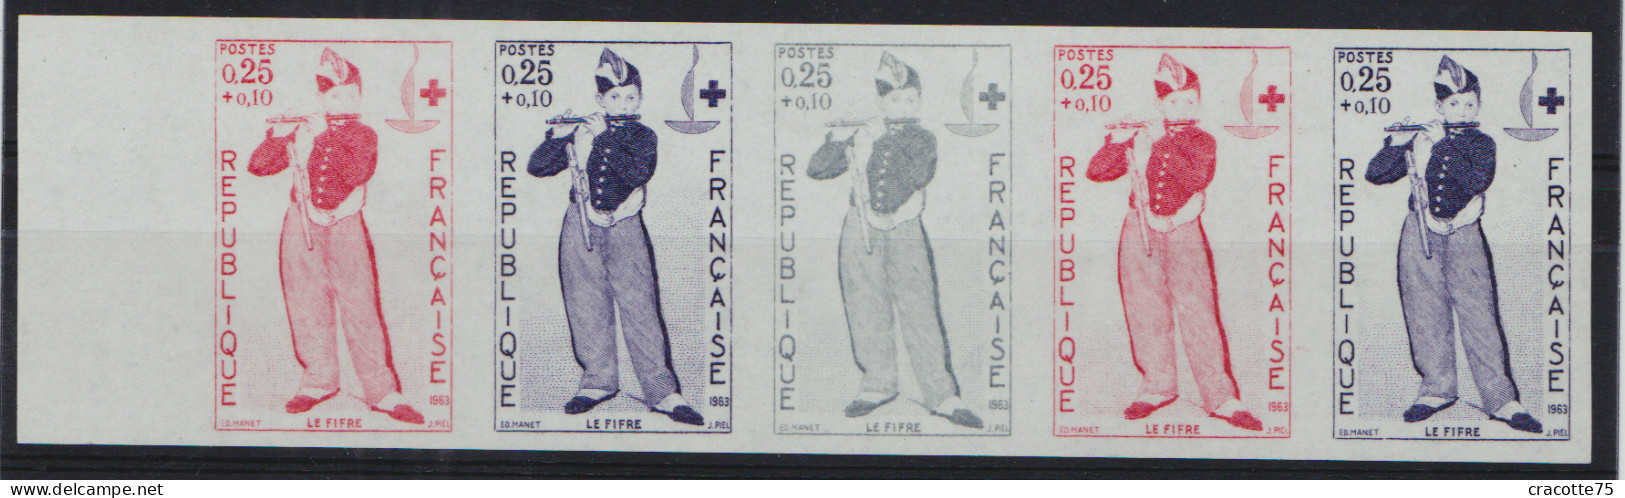 FRANCE - N°1323/1324. Croix-Rouge 1963. Le Fifre De Manet. Bande De 5. Luxe. - Music